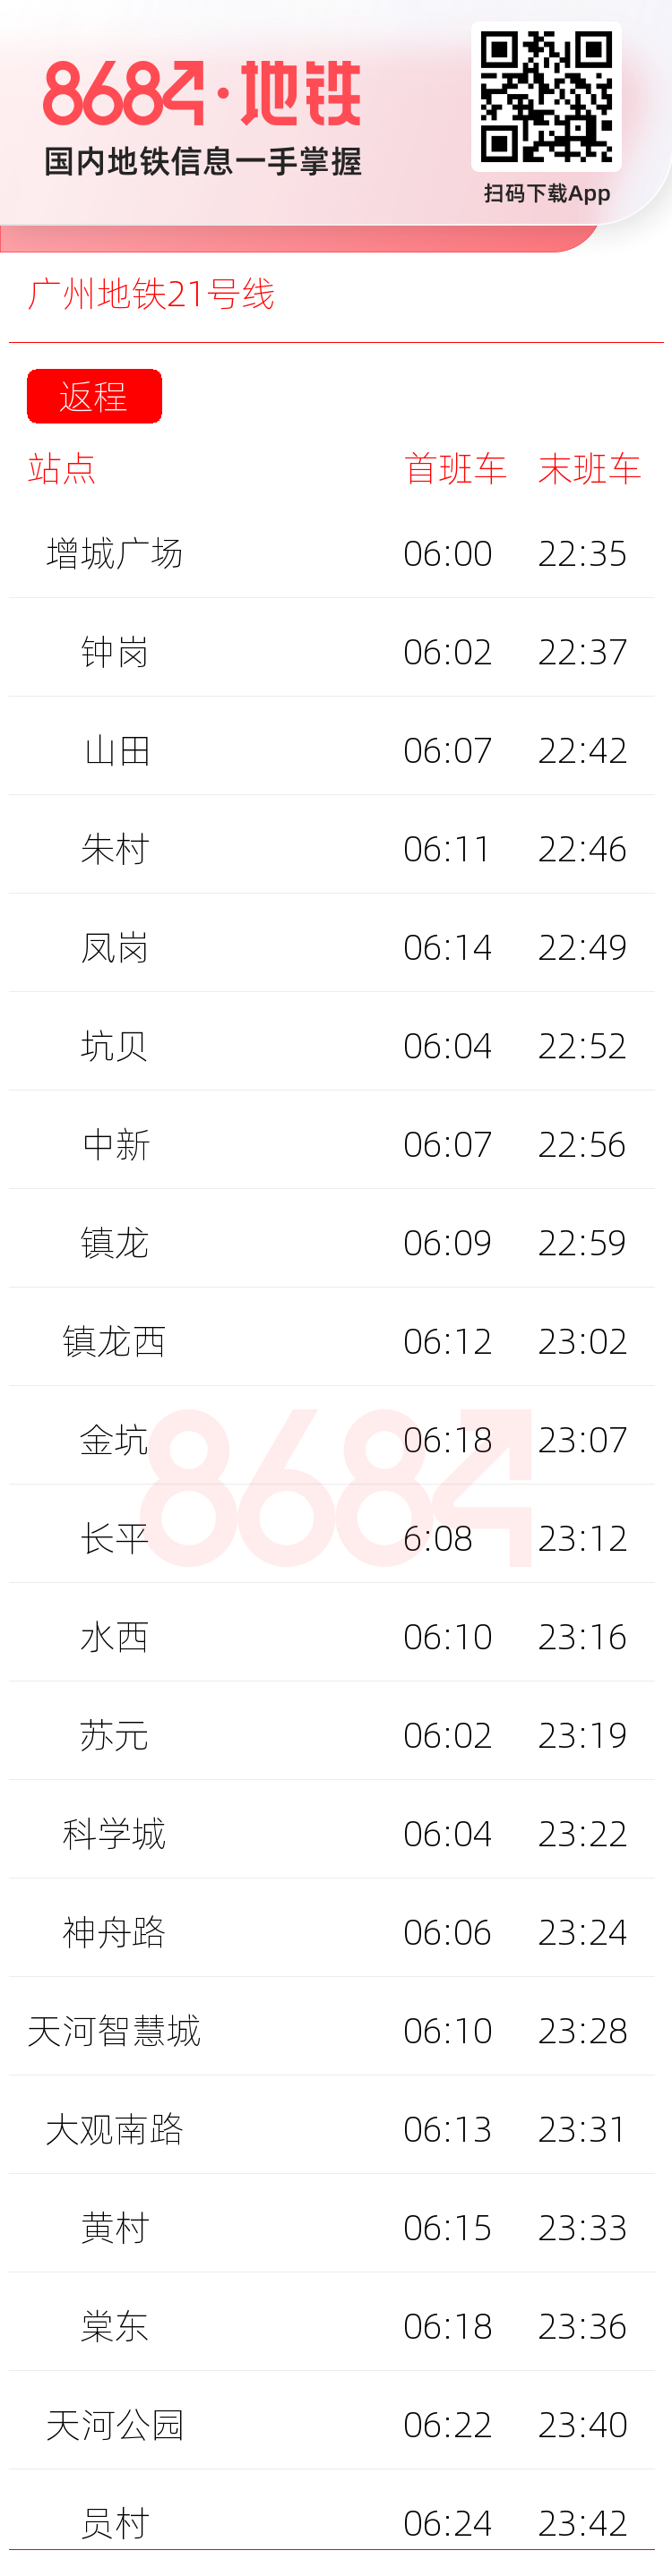 广州地铁21号线运营时间表